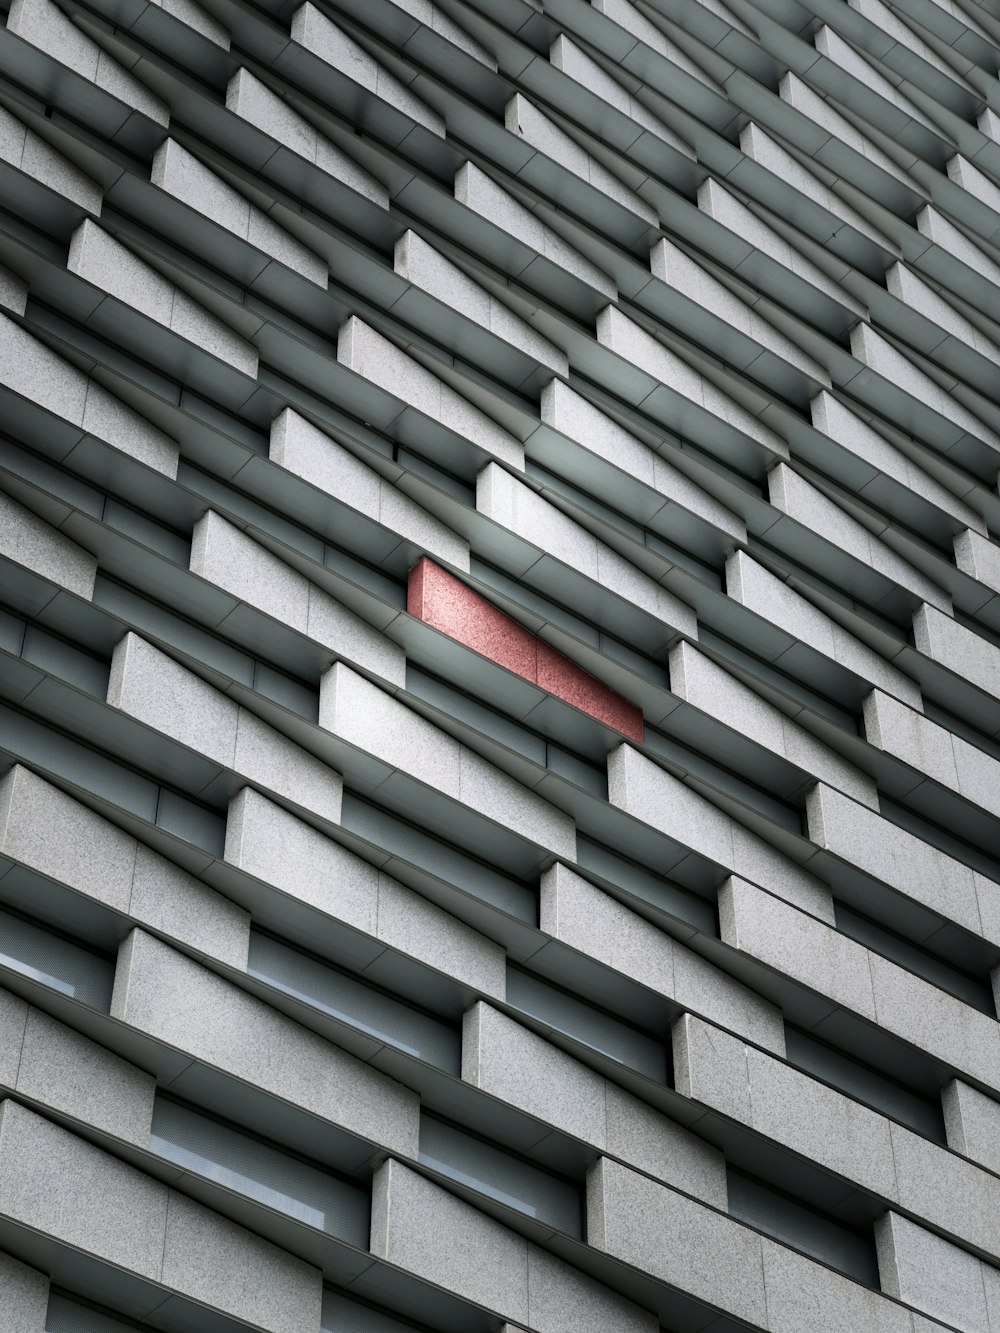 Un objeto rojo sobresale del costado de un edificio